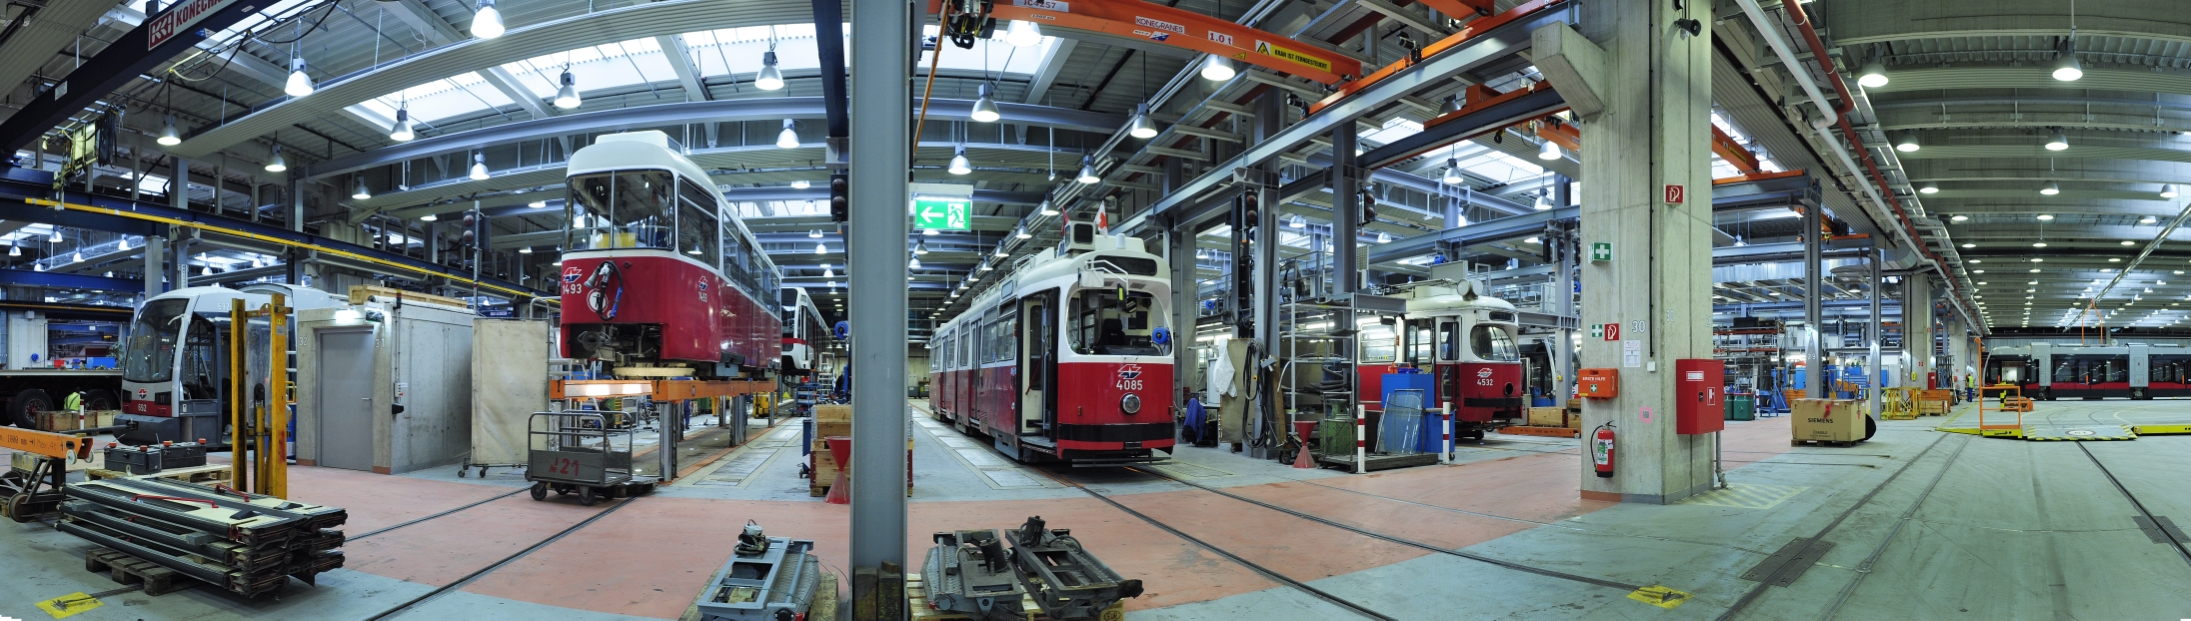 Die bereits zum Teil modernisierte Hauptwerkstätte der Wiener Linien in Simmering (HW).